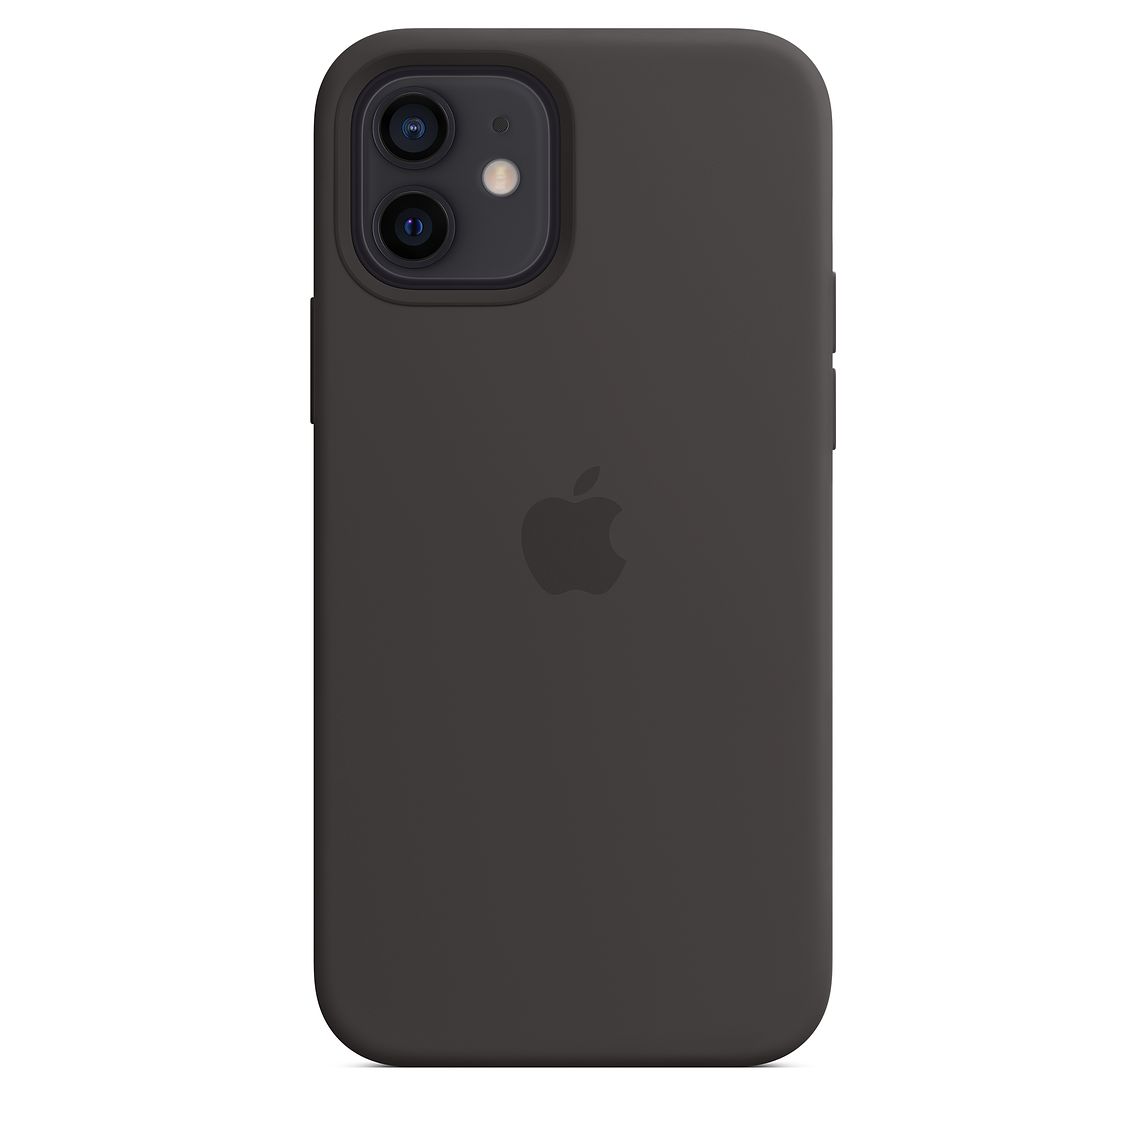 Фото — Чехол Apple MagSafe для iPhone 12/12 Pro, cиликон, чёрный